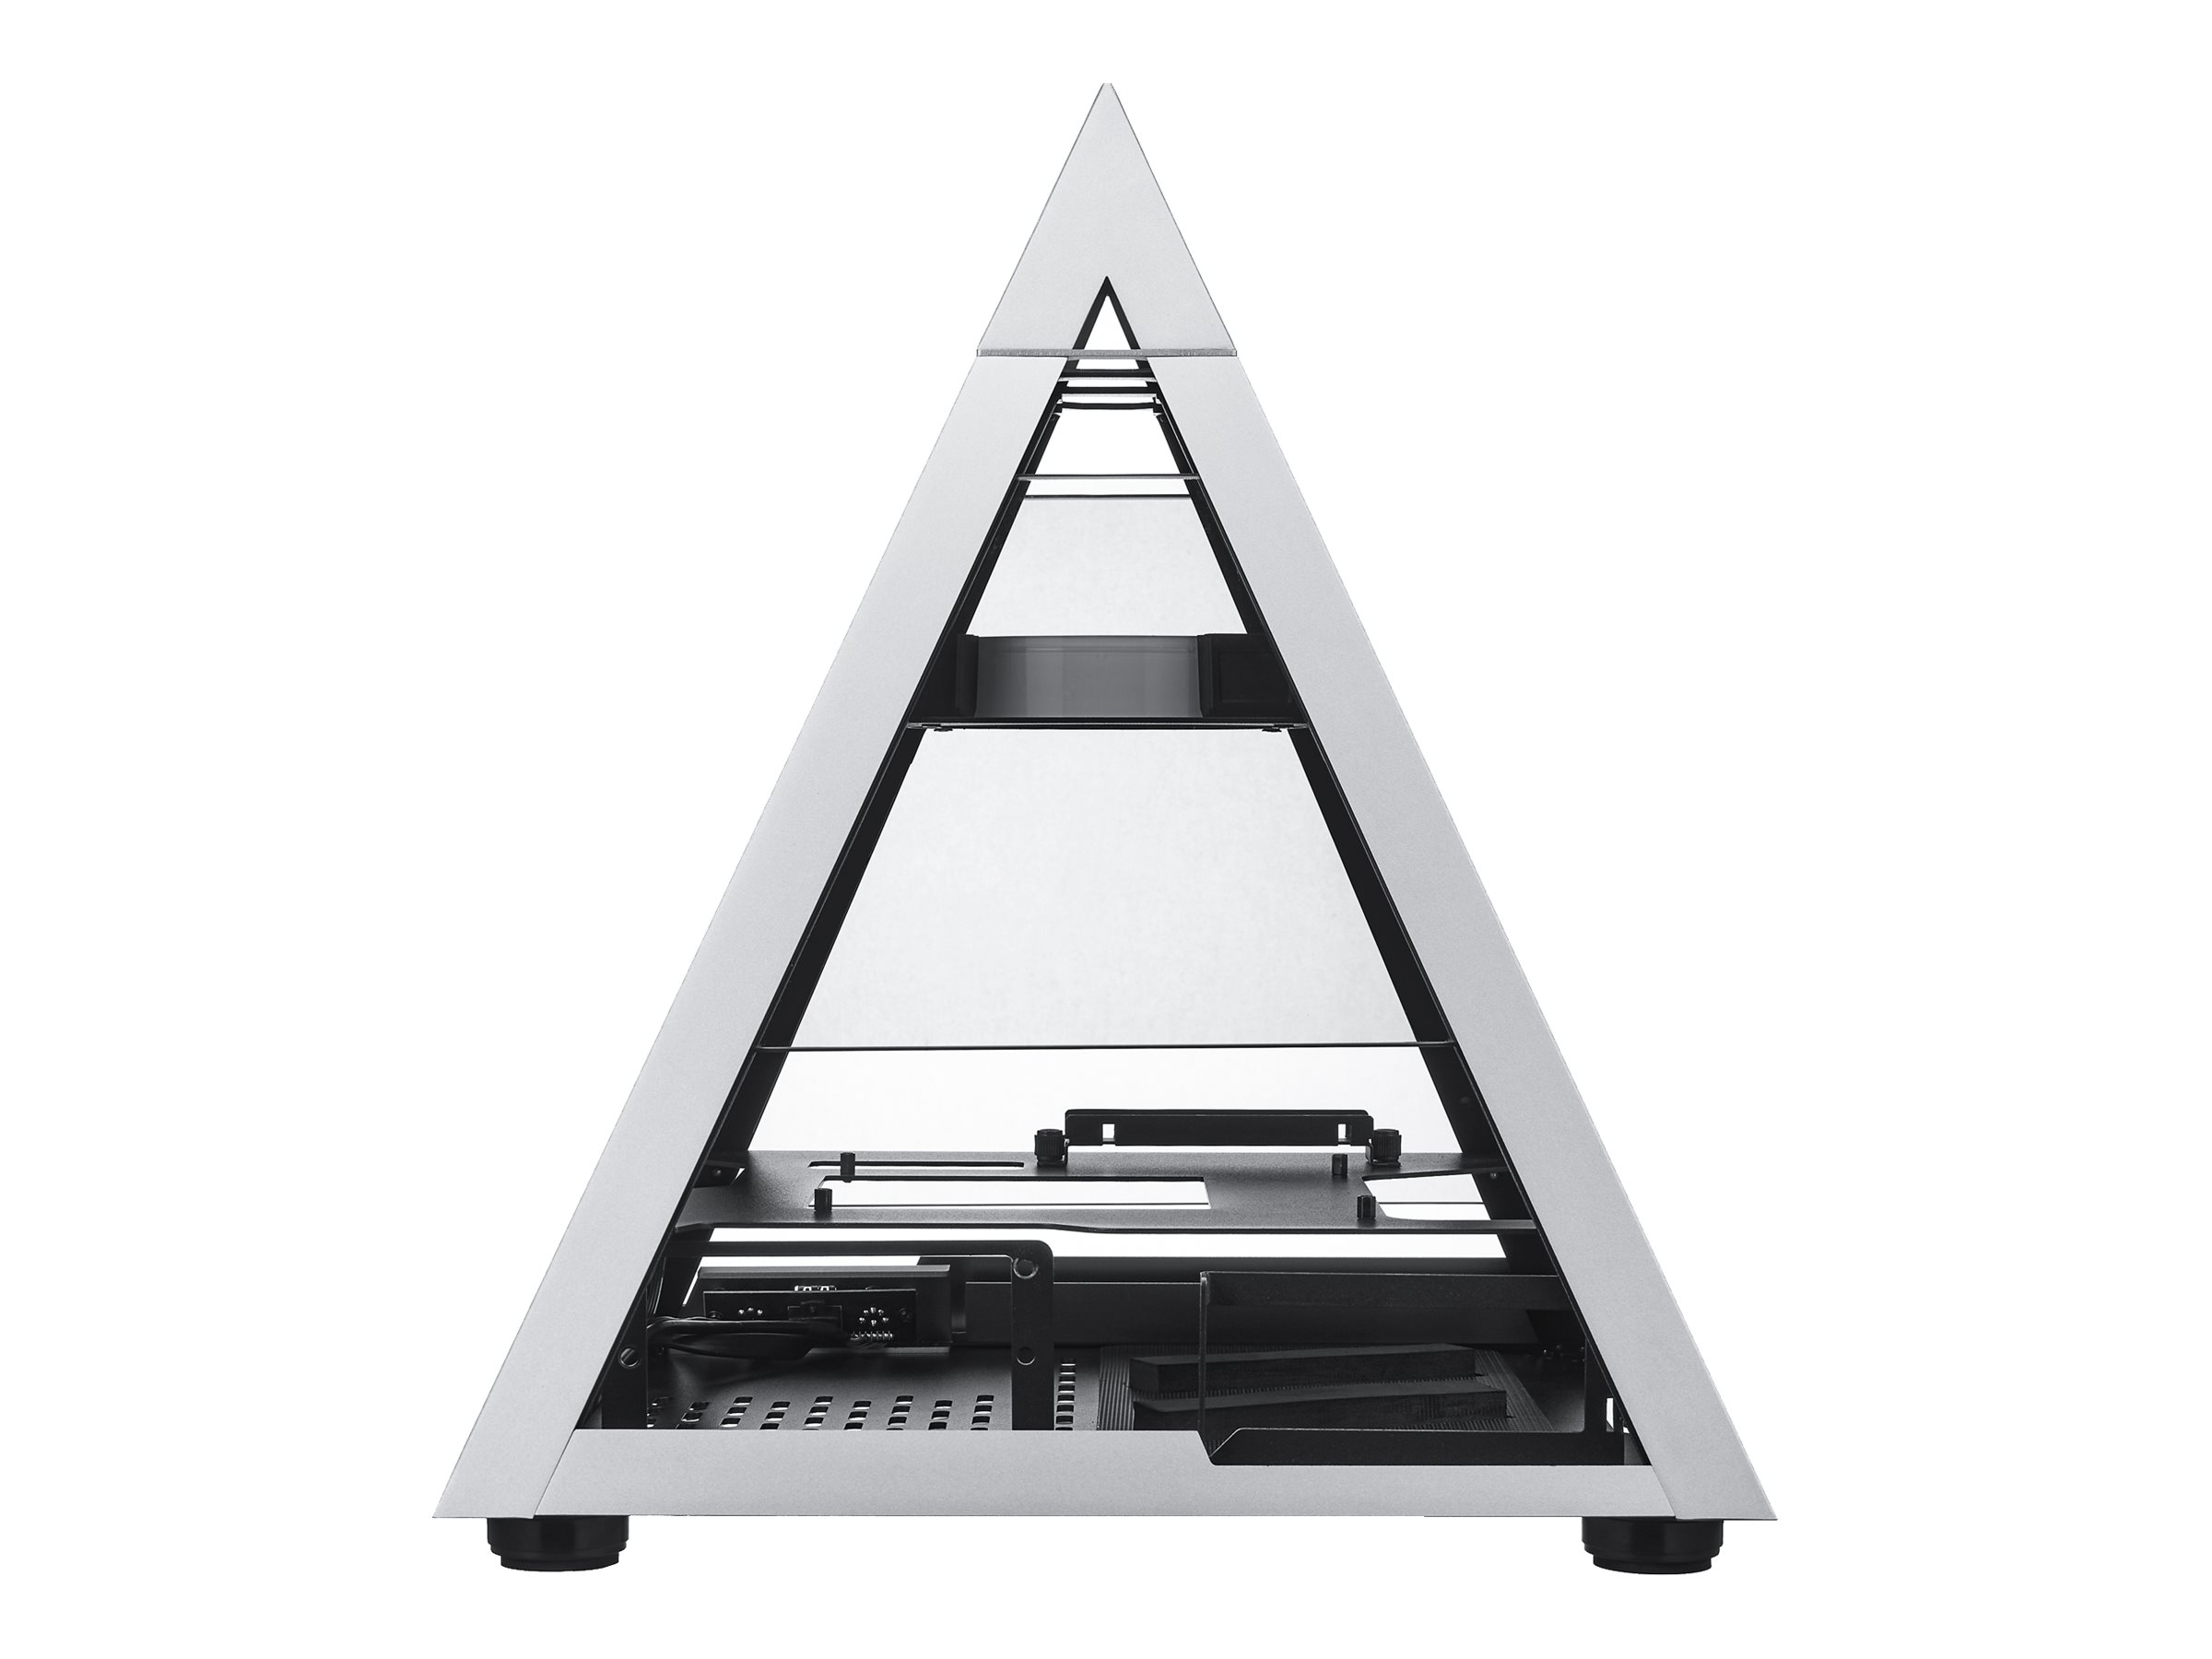 AZZA Pyramid Mini 806 sr mini-ITX | CSAZ-806 CSAZ-806